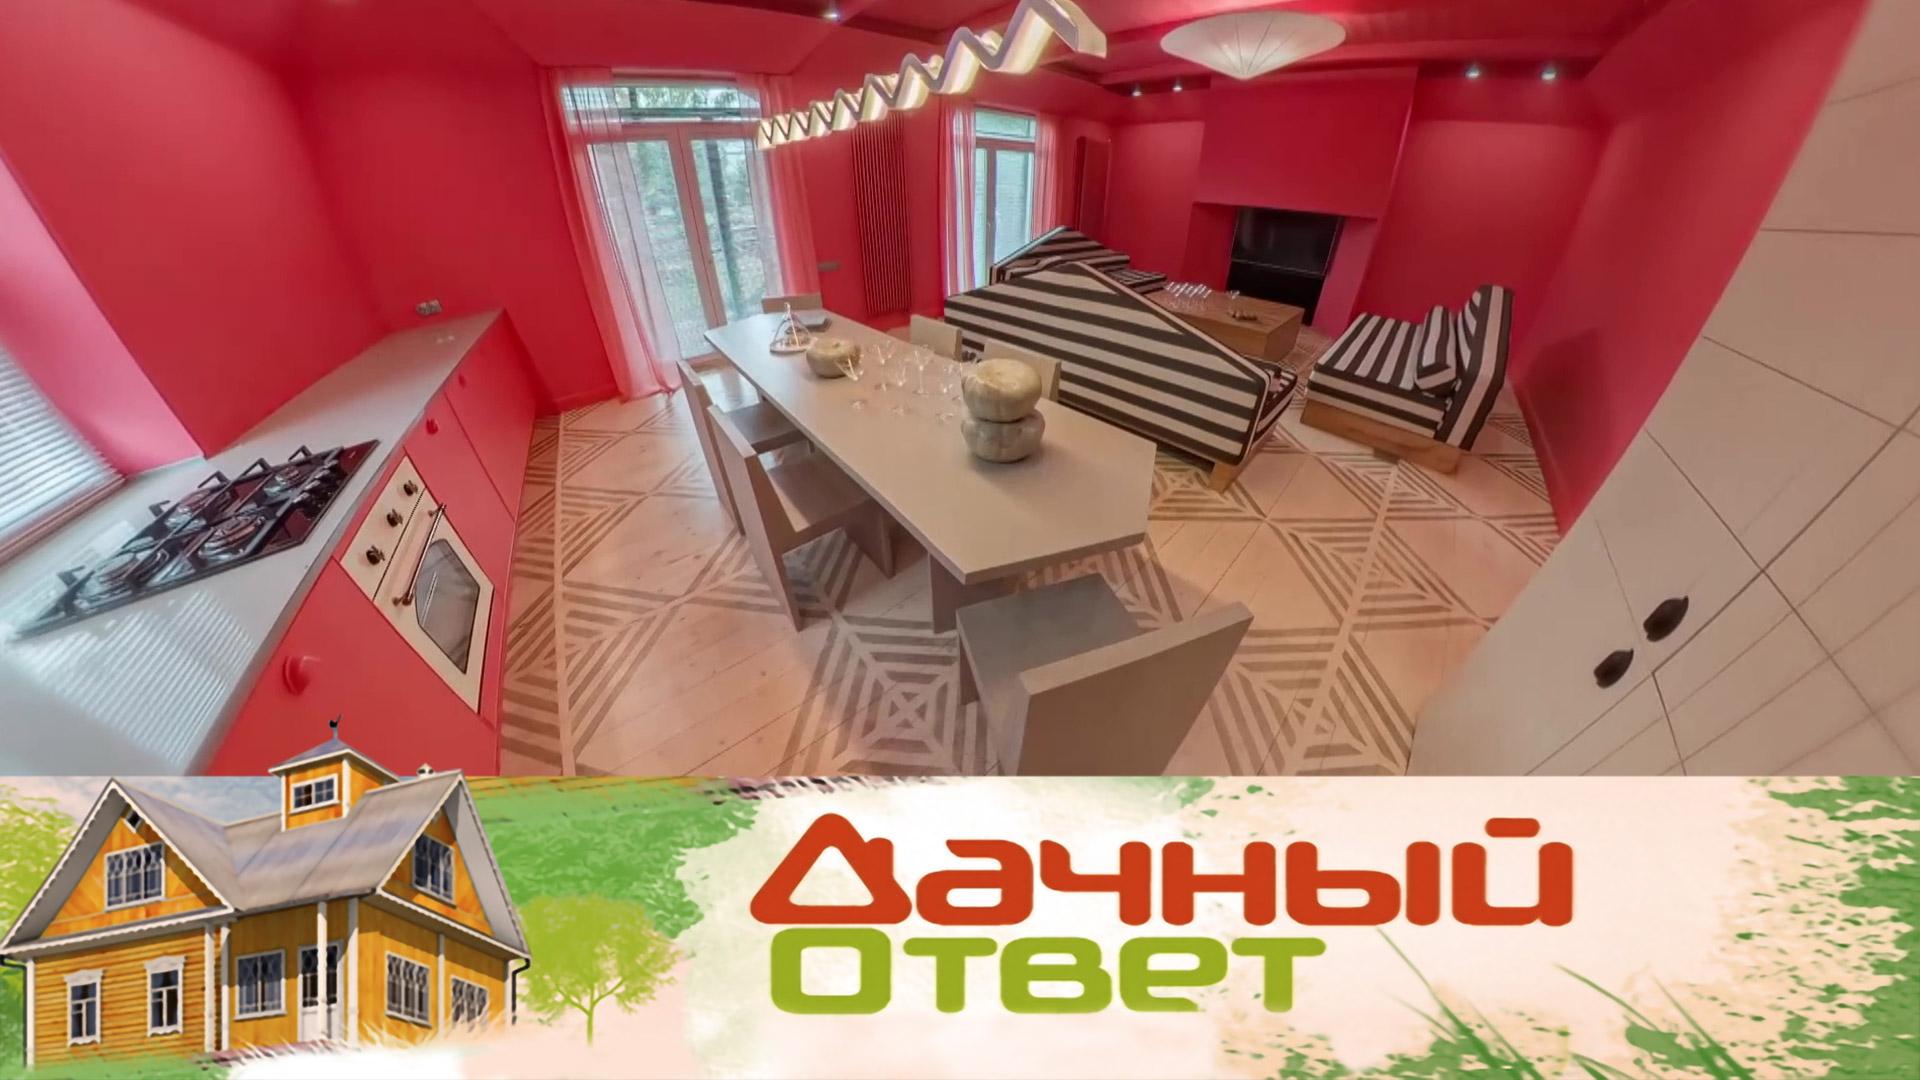 Идеальный цвет и диваны-треугольники в гостиной со спрятанной кухней | Дачный ответ